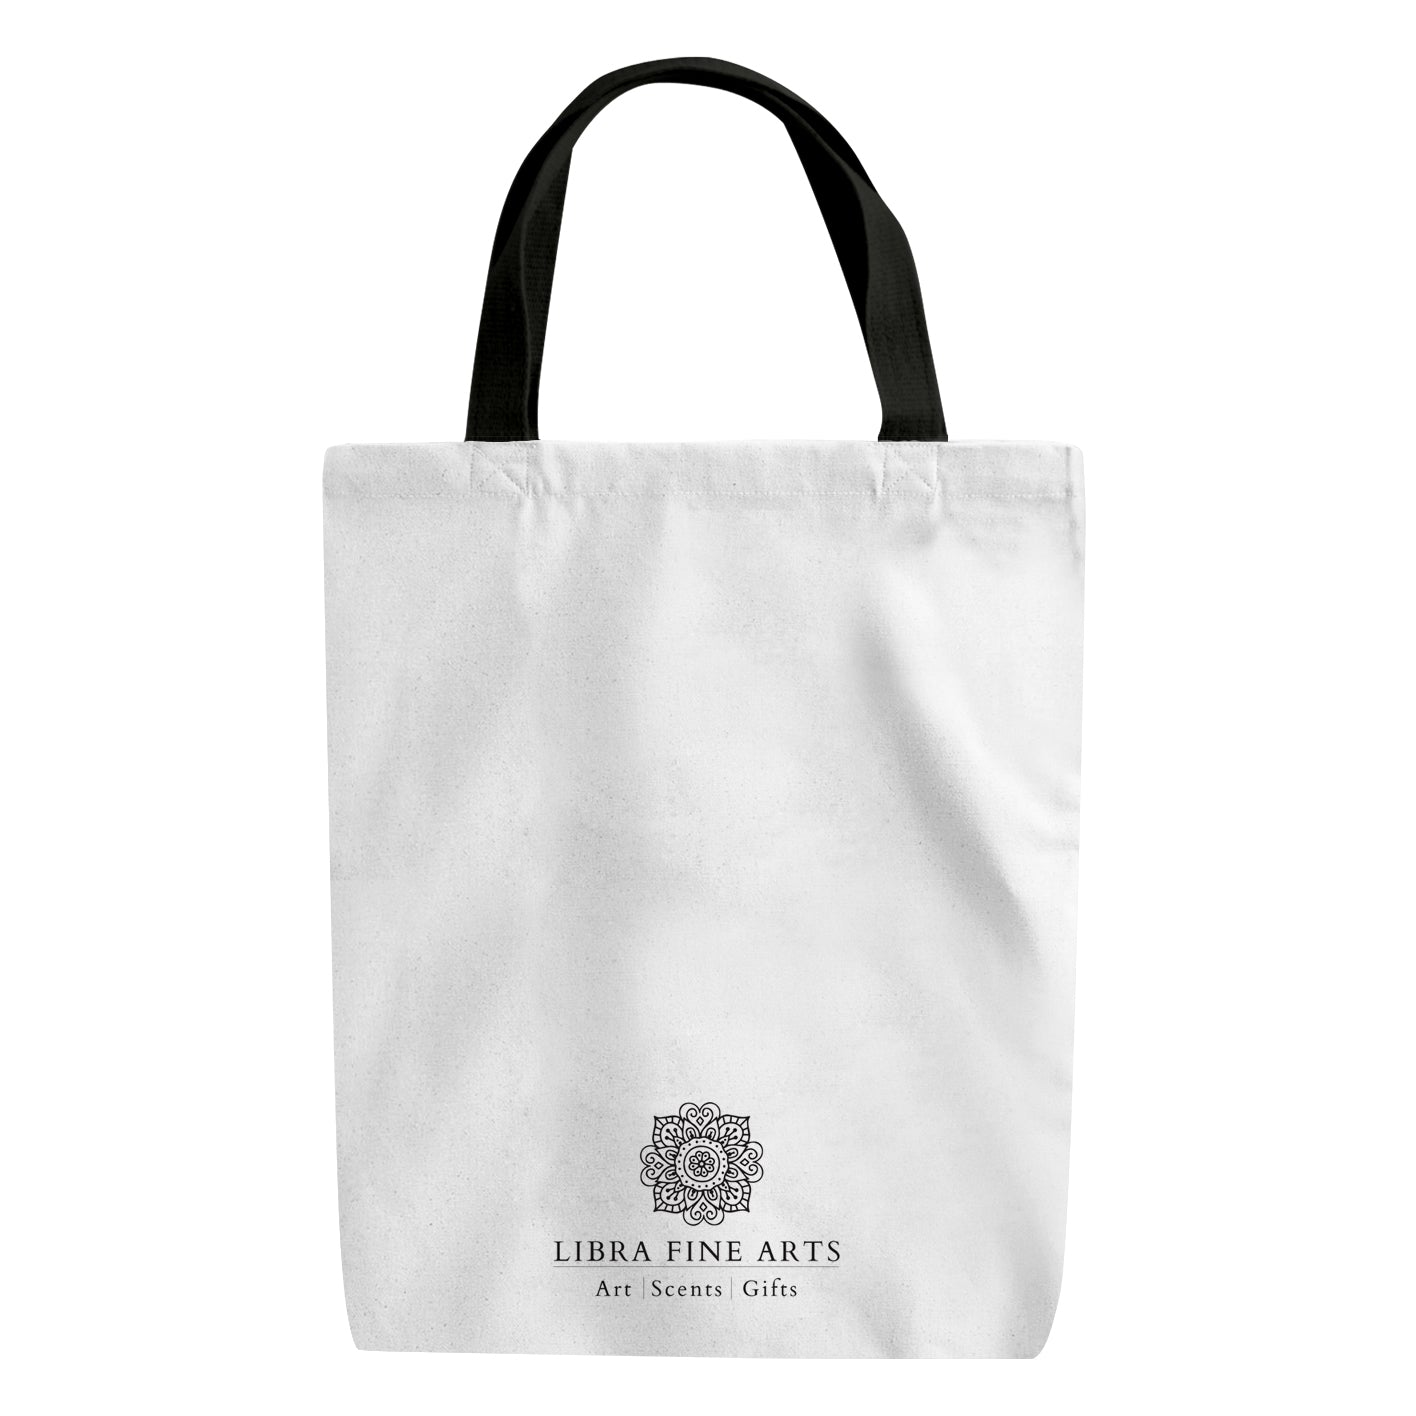 A Robin Reusable Shopper Bag From Libra Fine Arts  